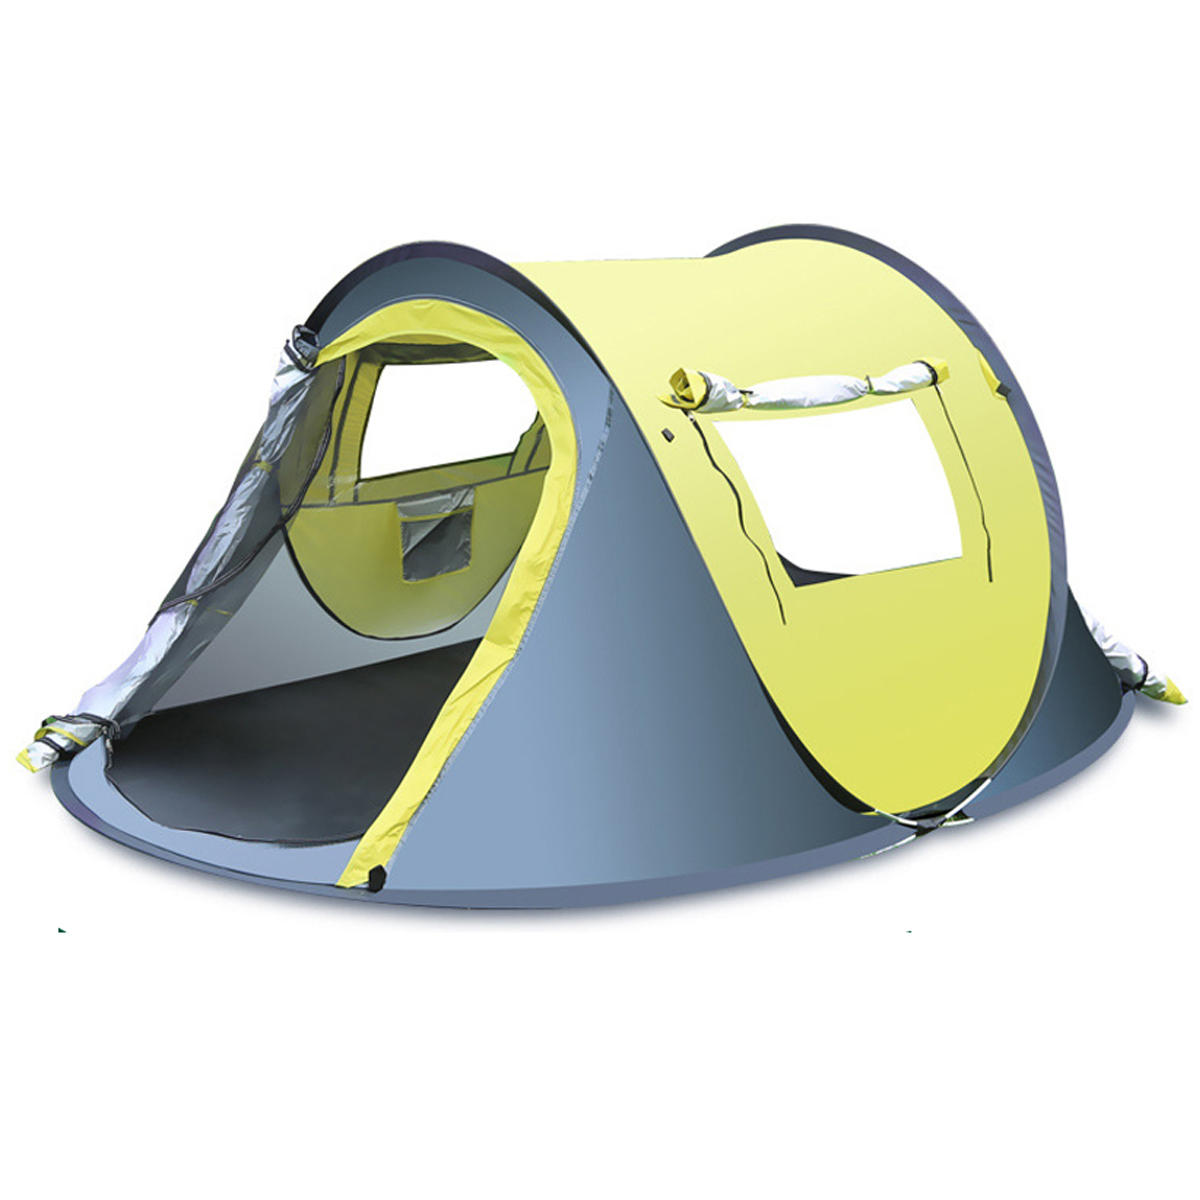 Tenda rápida e automática para exteriores para 3-4 pessoas, impermeável e resistente à chuva, com toldo para proteger do sol, ideal para camping e caminhadas.